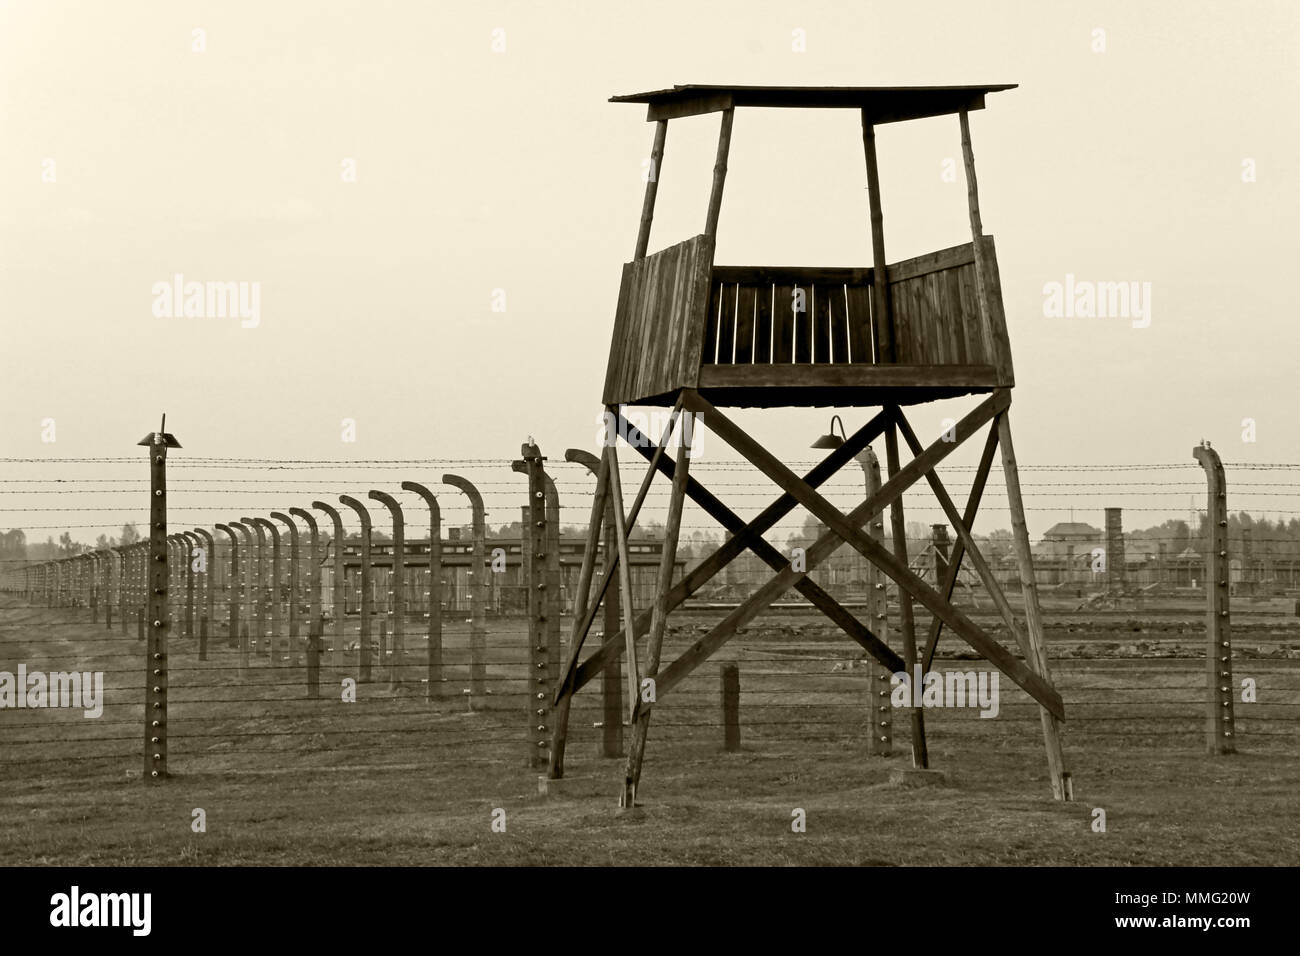 AUSCHWITZ, Polen, 12. Oktober 2013: Wachtturm und Zaun im Konzentrationslager Auschwitz Birkenau KZ, Schwarz, Weiß und Beige duplex Verarbeitung Fotografie, Polen Stockfoto